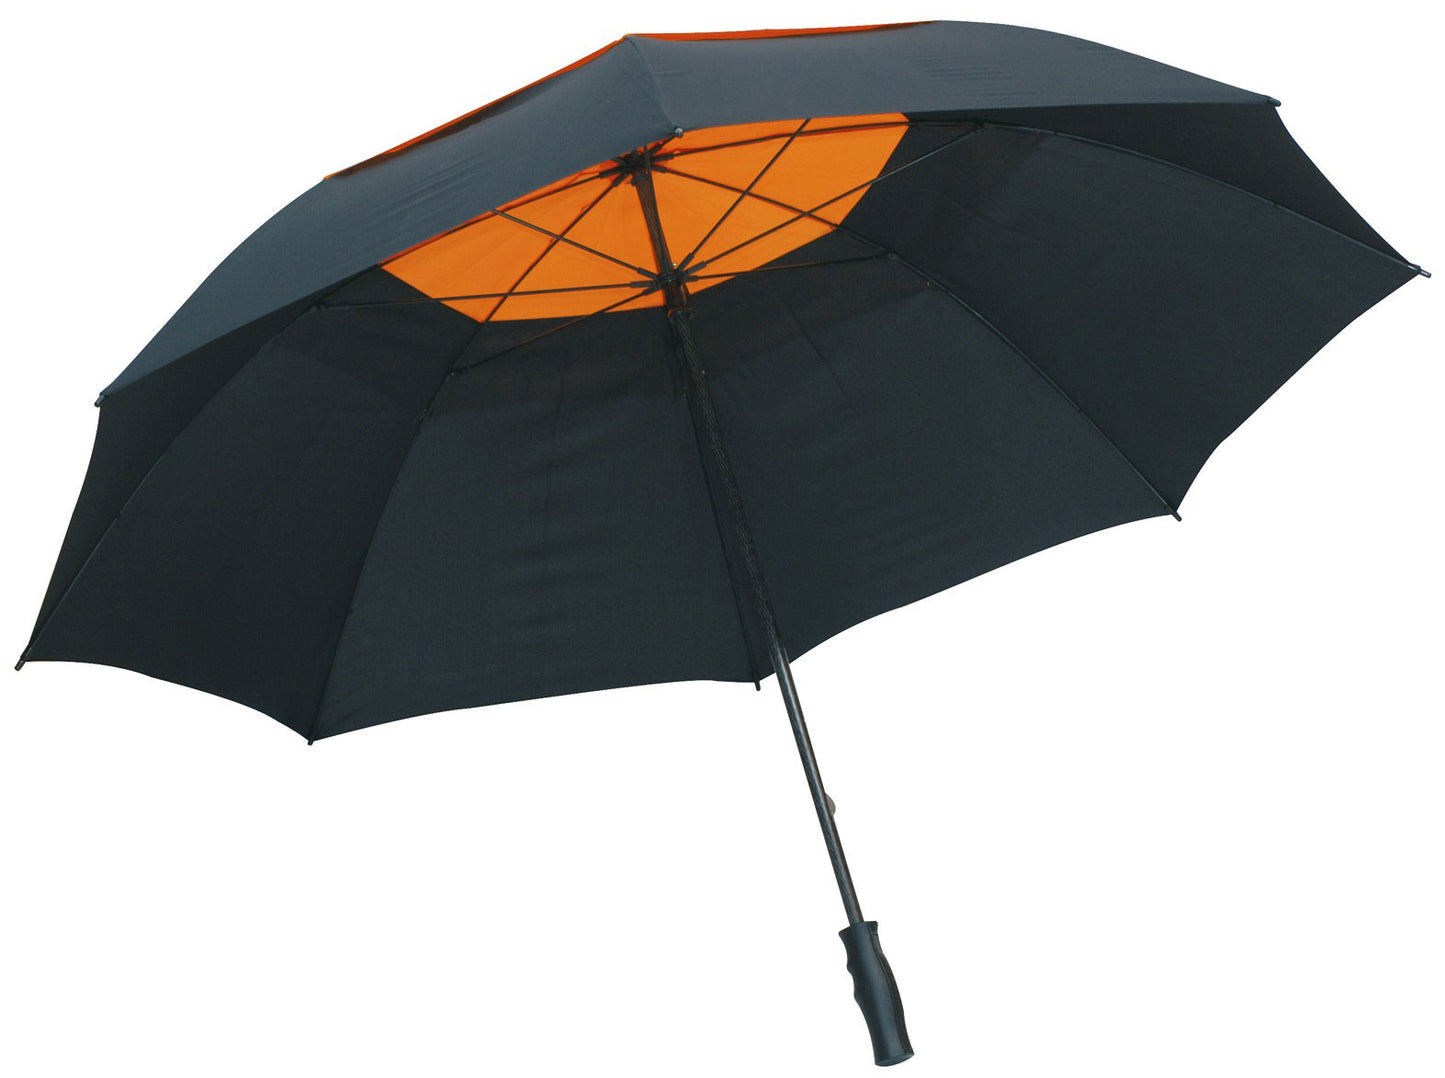 Μαύρη/πορτοκαλί ομπρέλα βροχής, συνοδείας, με αεραγωγό, ιστός και ακτίνες από αθρακόνημα.